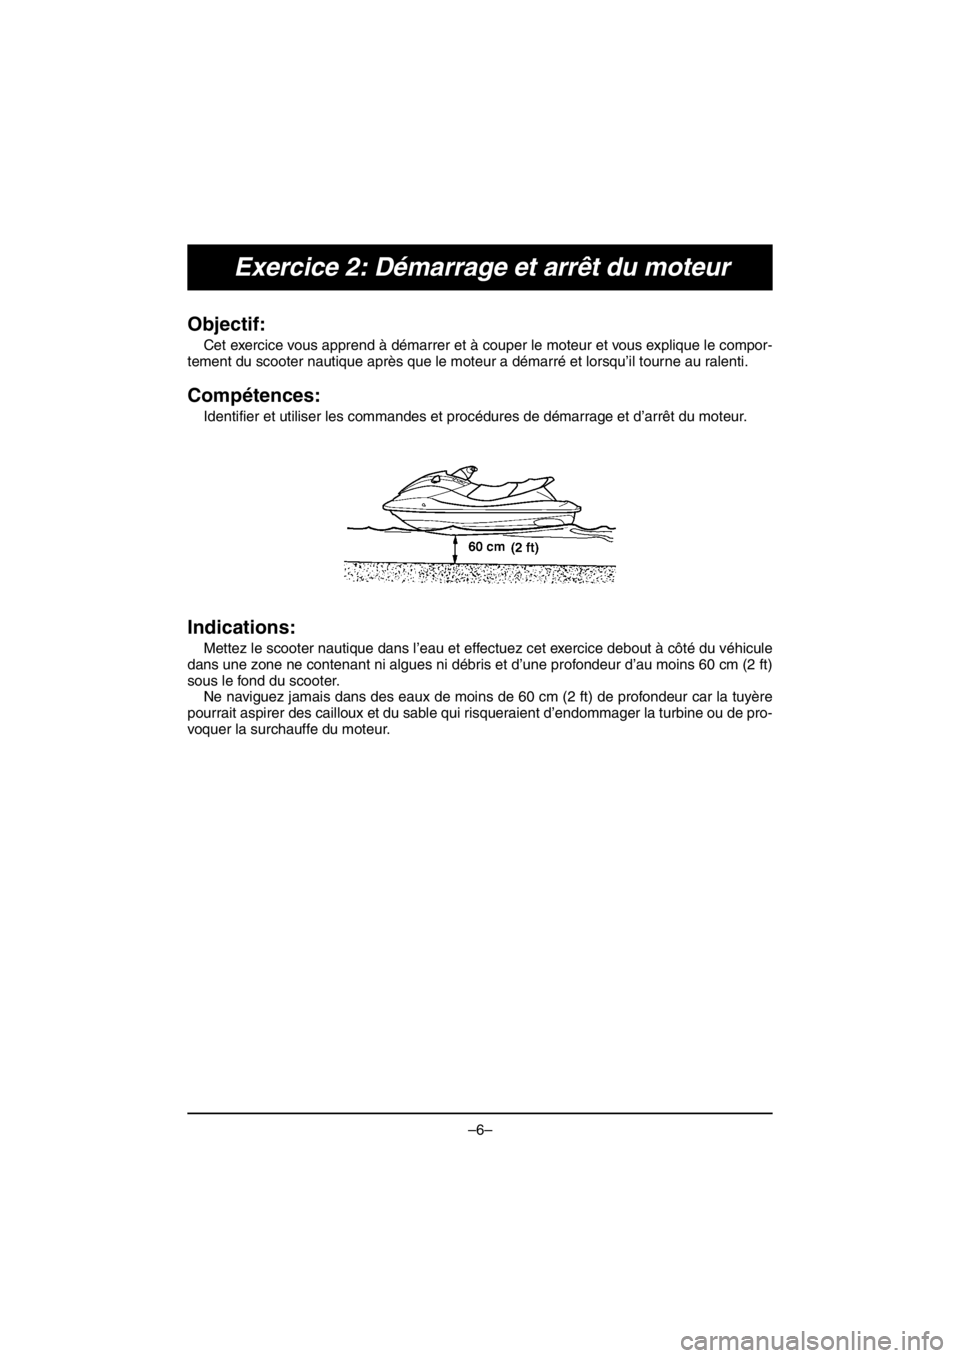 YAMAHA V1 2016  Manuale duso (in Italian) –6–
Exercice 2: Démarrage et arrêt du moteur
Objectif: 
Cet exercice vous apprend à démarrer et à couper le moteur et vous explique le compor-
tement du scooter nautique après que le moteur 